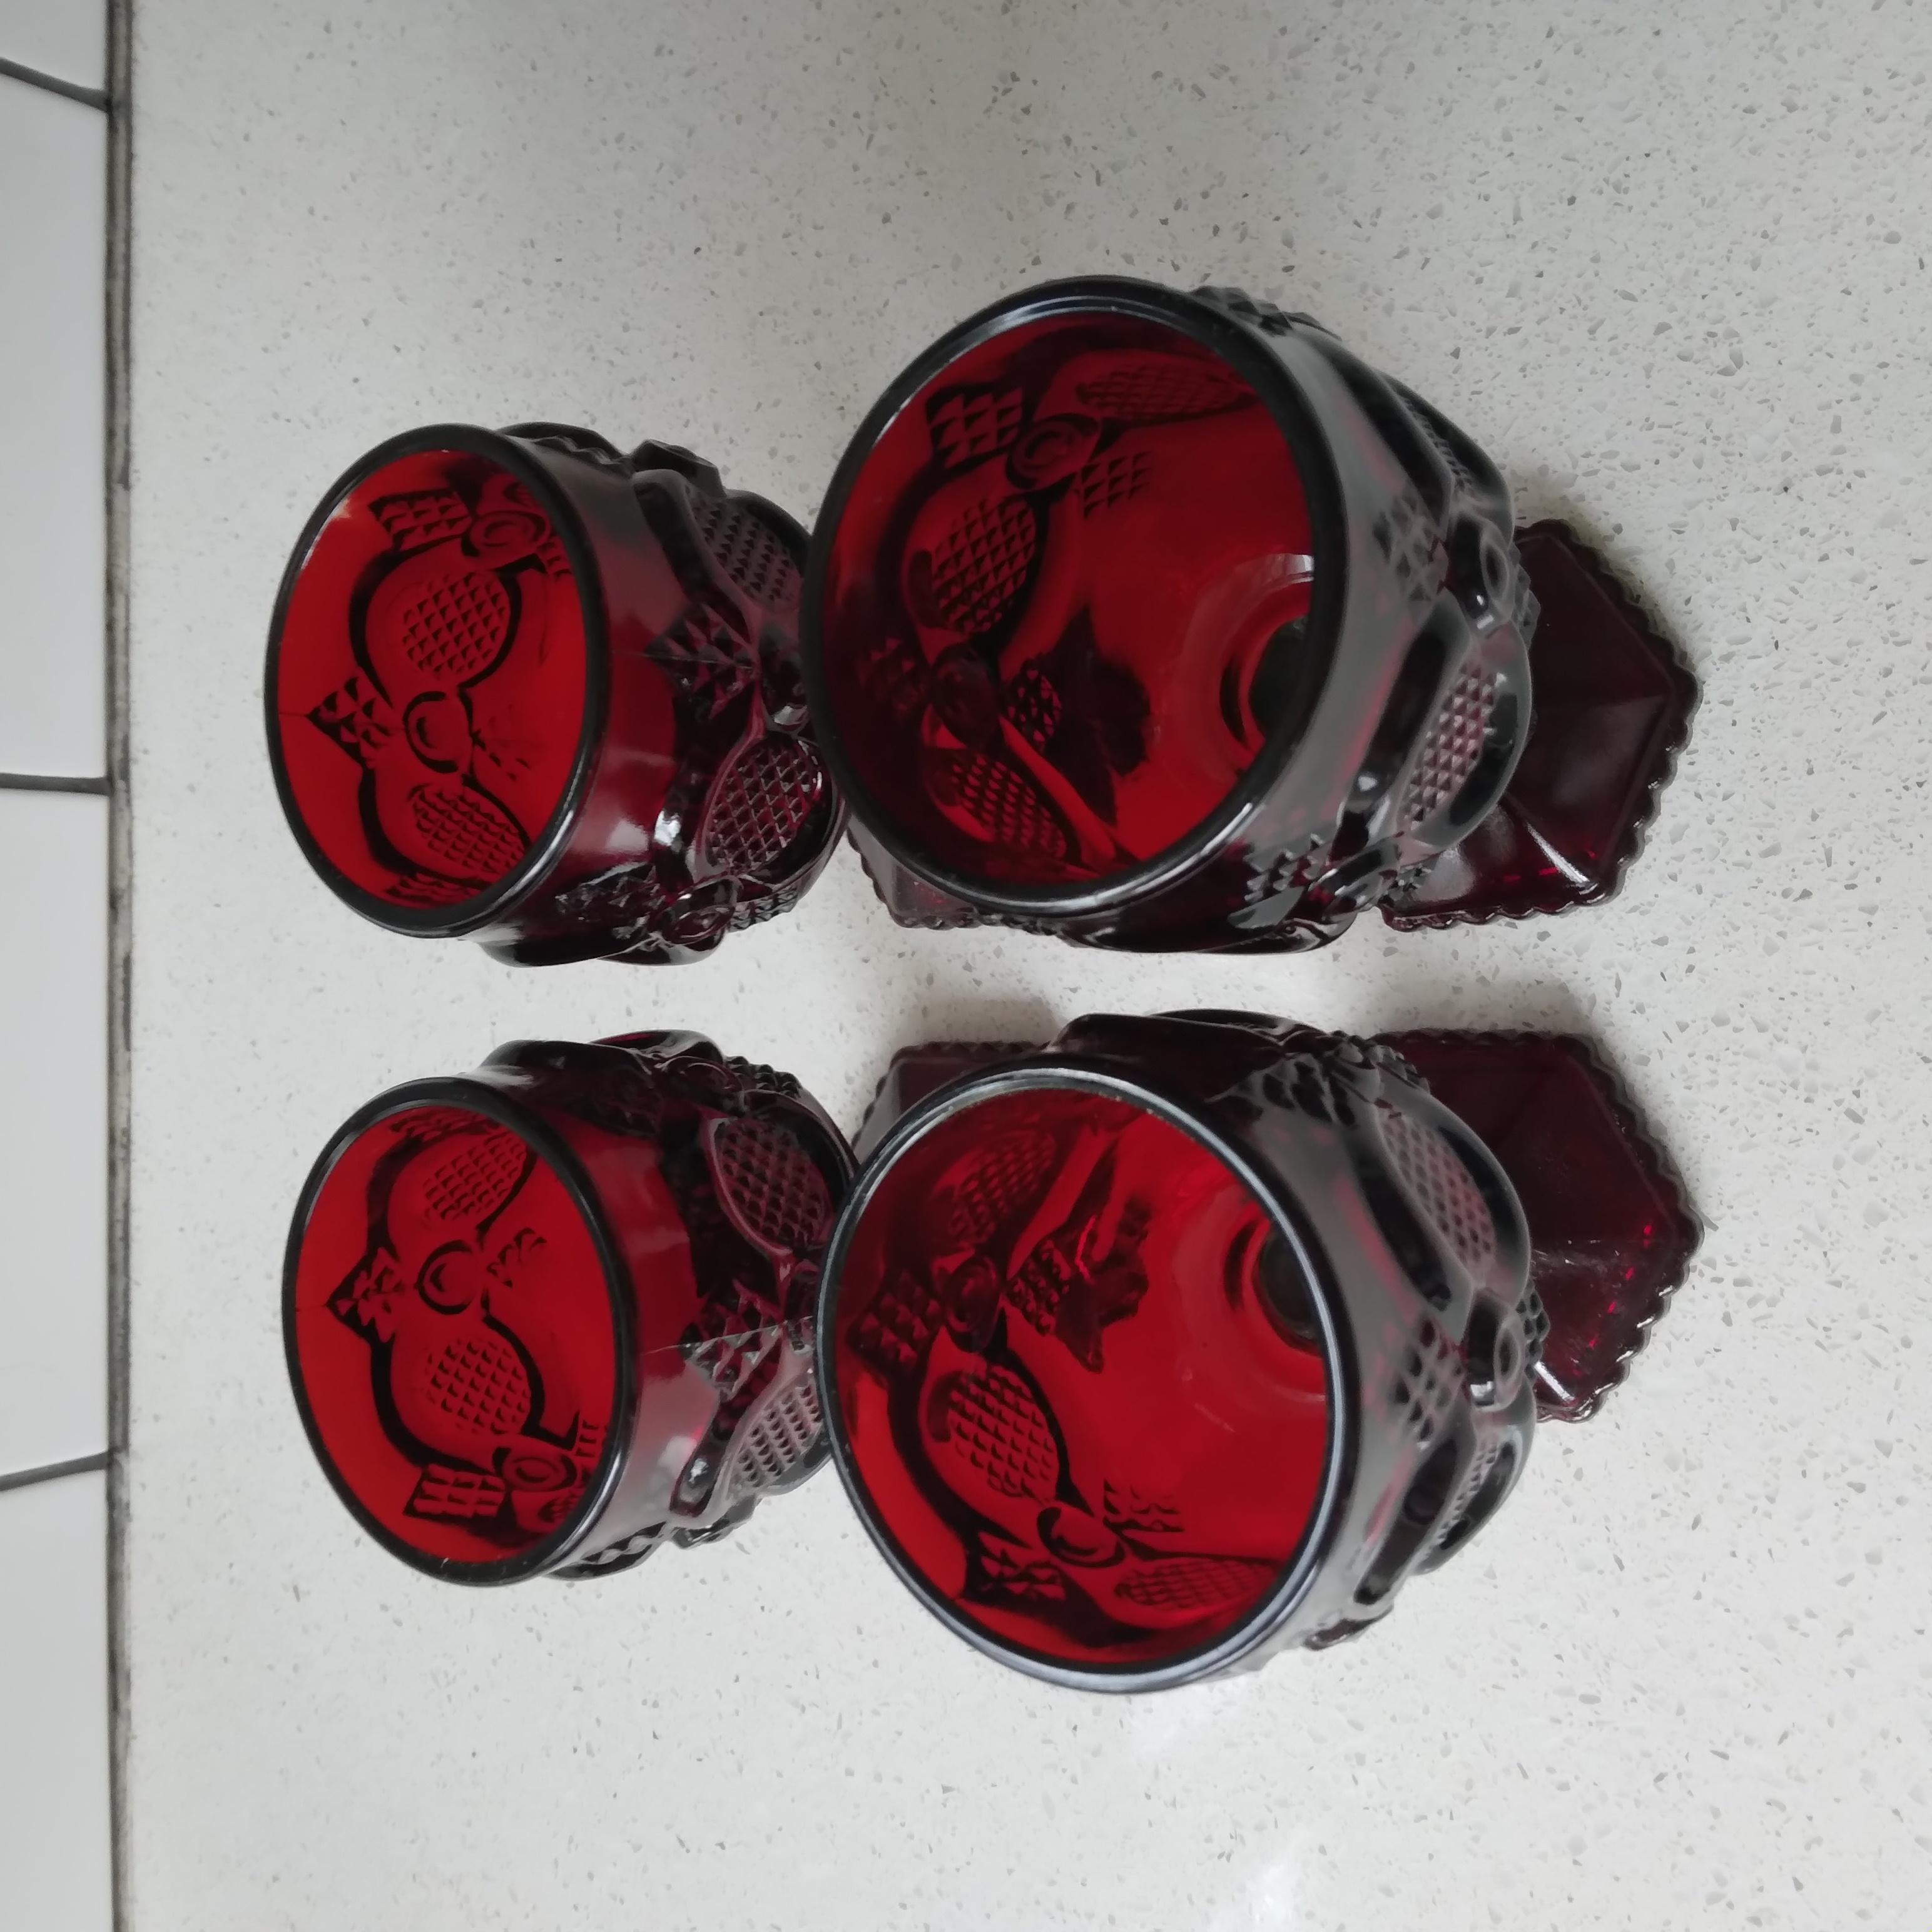 Extravagance dans les tons de Jewell ! Ces magnifiques gobelets rouge rubis sont le moyen idéal d'ajouter une couleur vibrante et un design élégant à votre collection. Le verre, lourd et à parois épaisses, est en excellent état pour son âge.